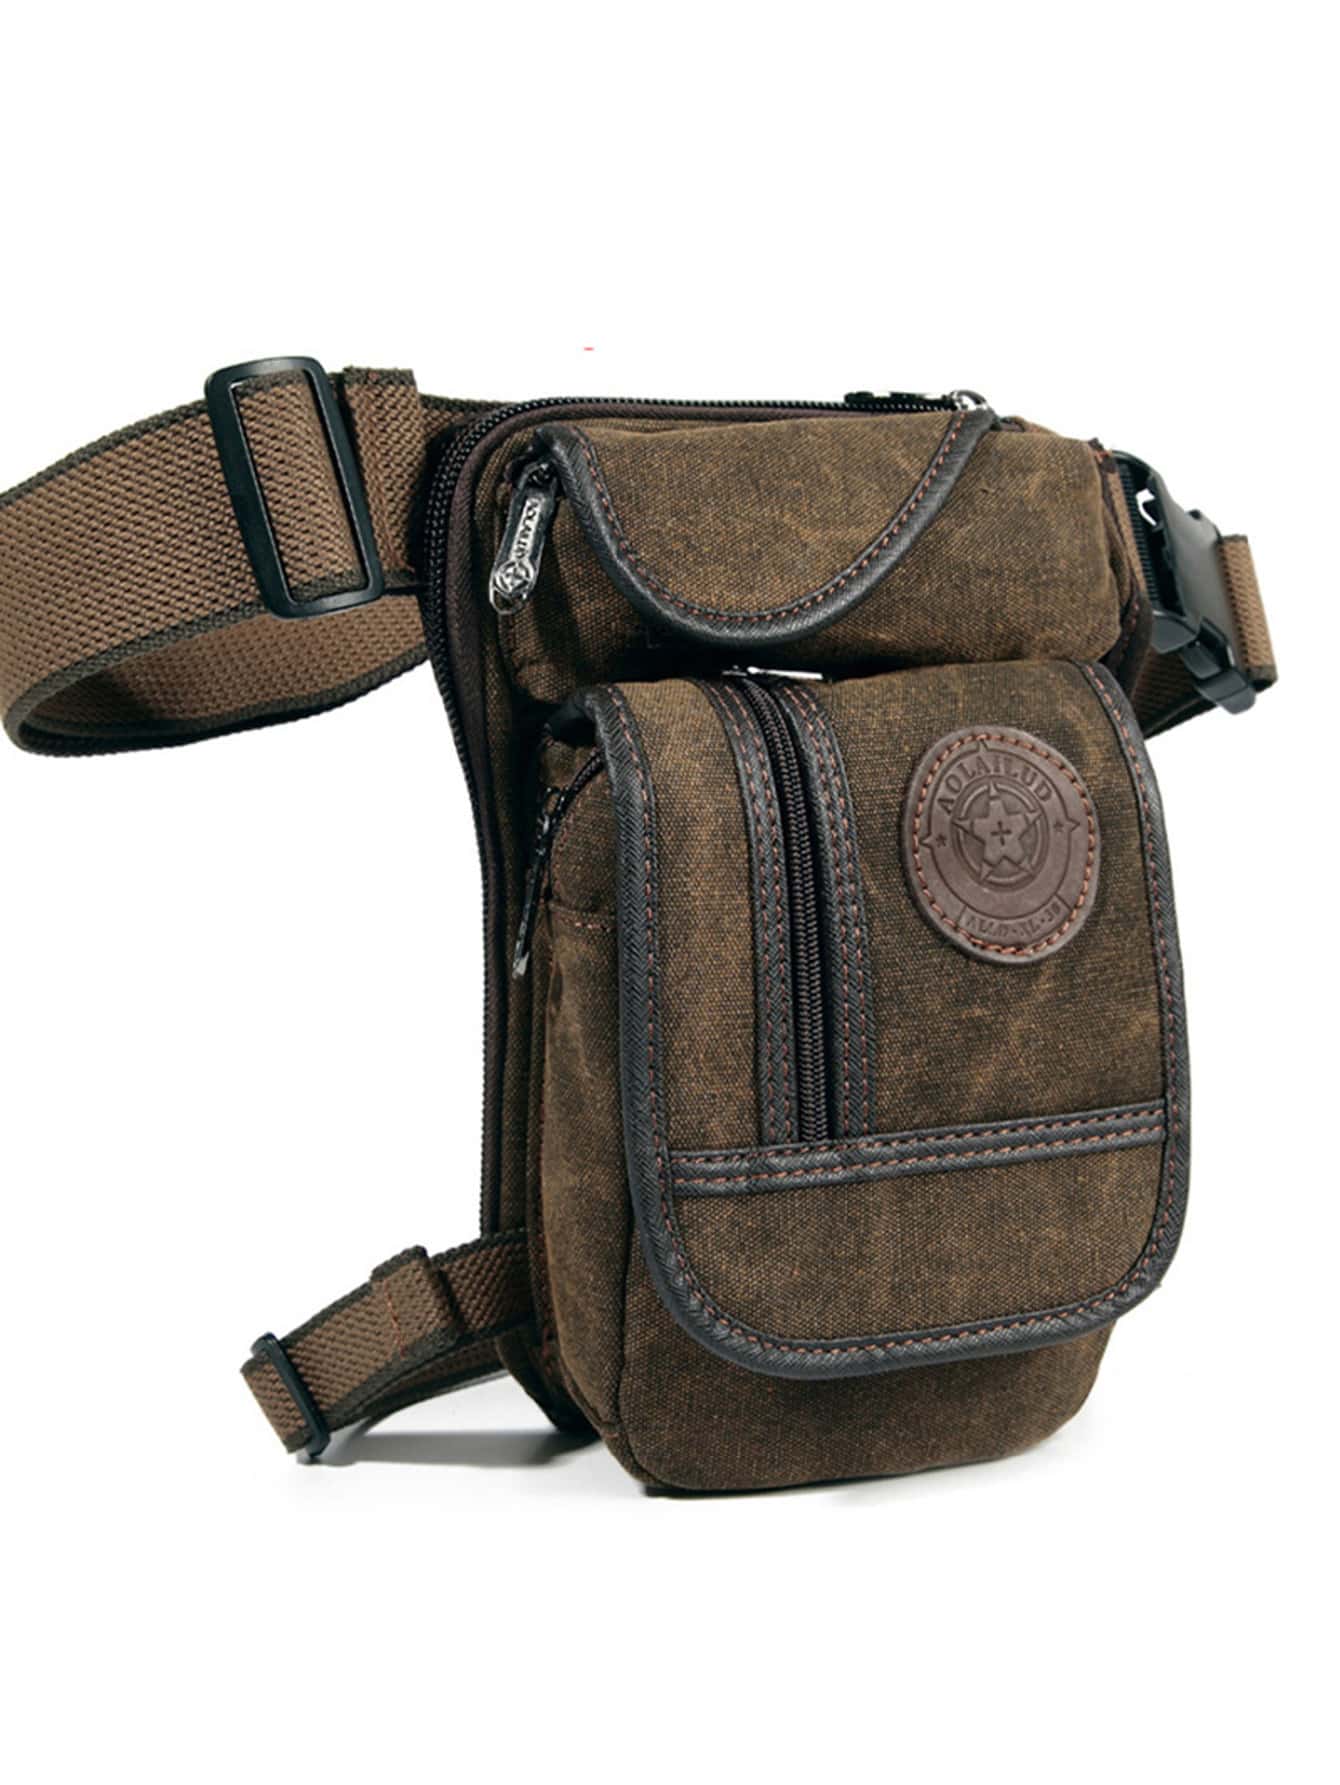 Мужская парусиновая поясная сумка с заниженной талией, кофейный коричневый мужская винтажная поясная сумка 6101 кожаная поясная сумка для занятий спортом на открытом воздухе тактическая поясная сумка